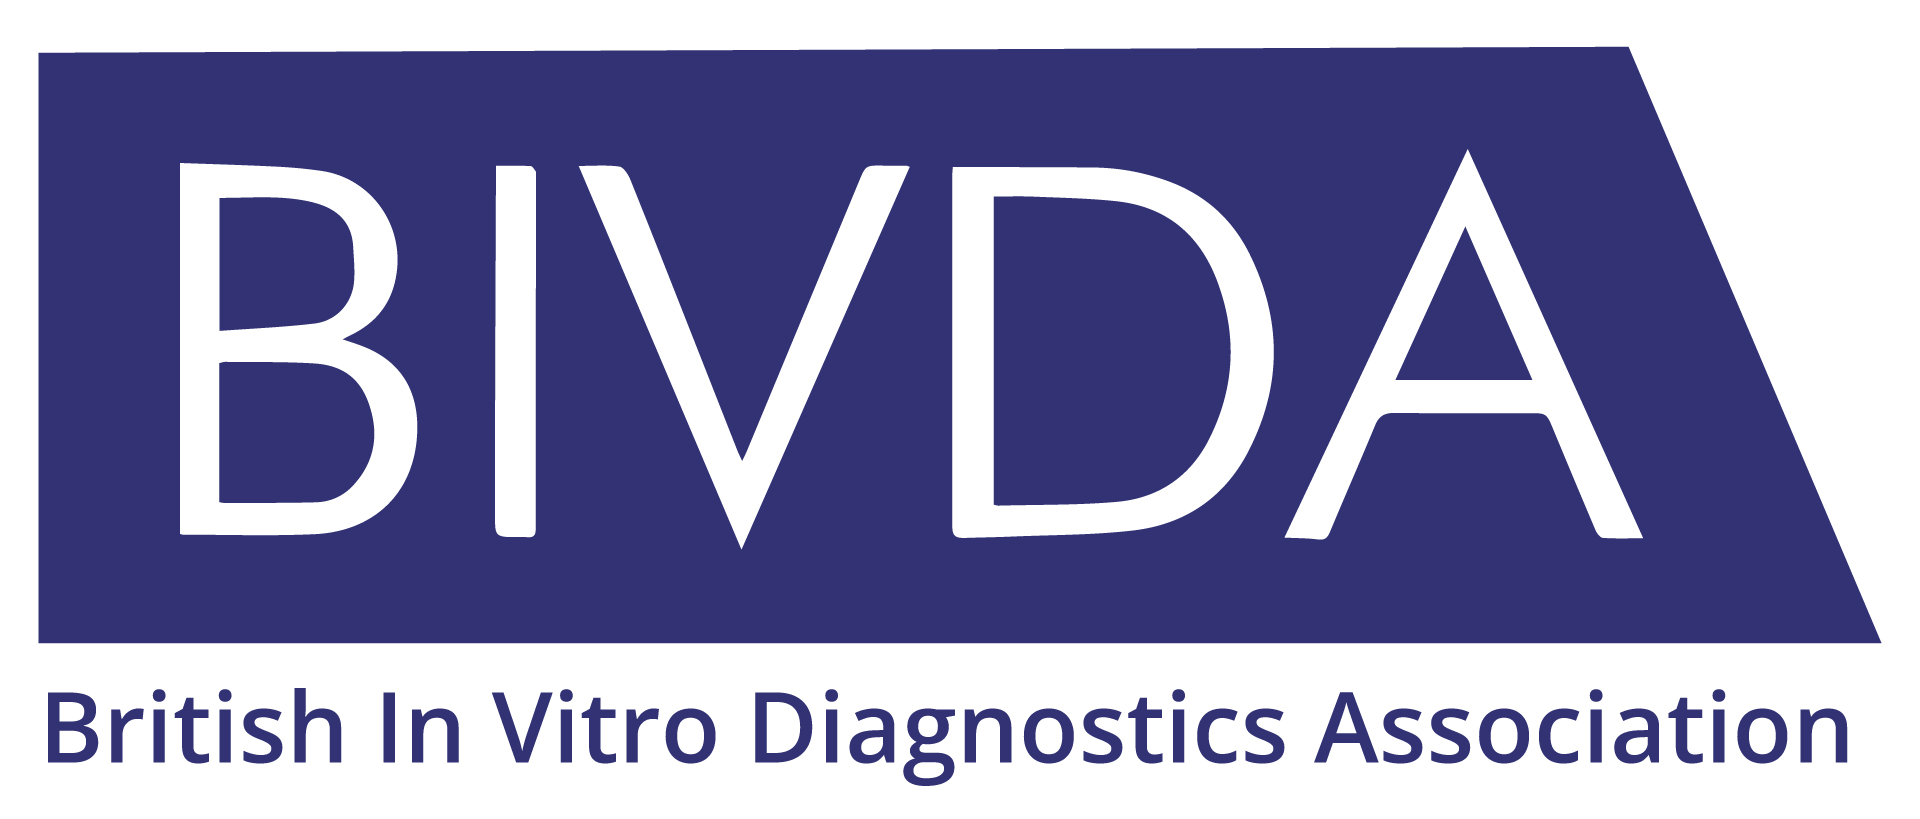 BIVDA - British In Vitro Diagnostics Association